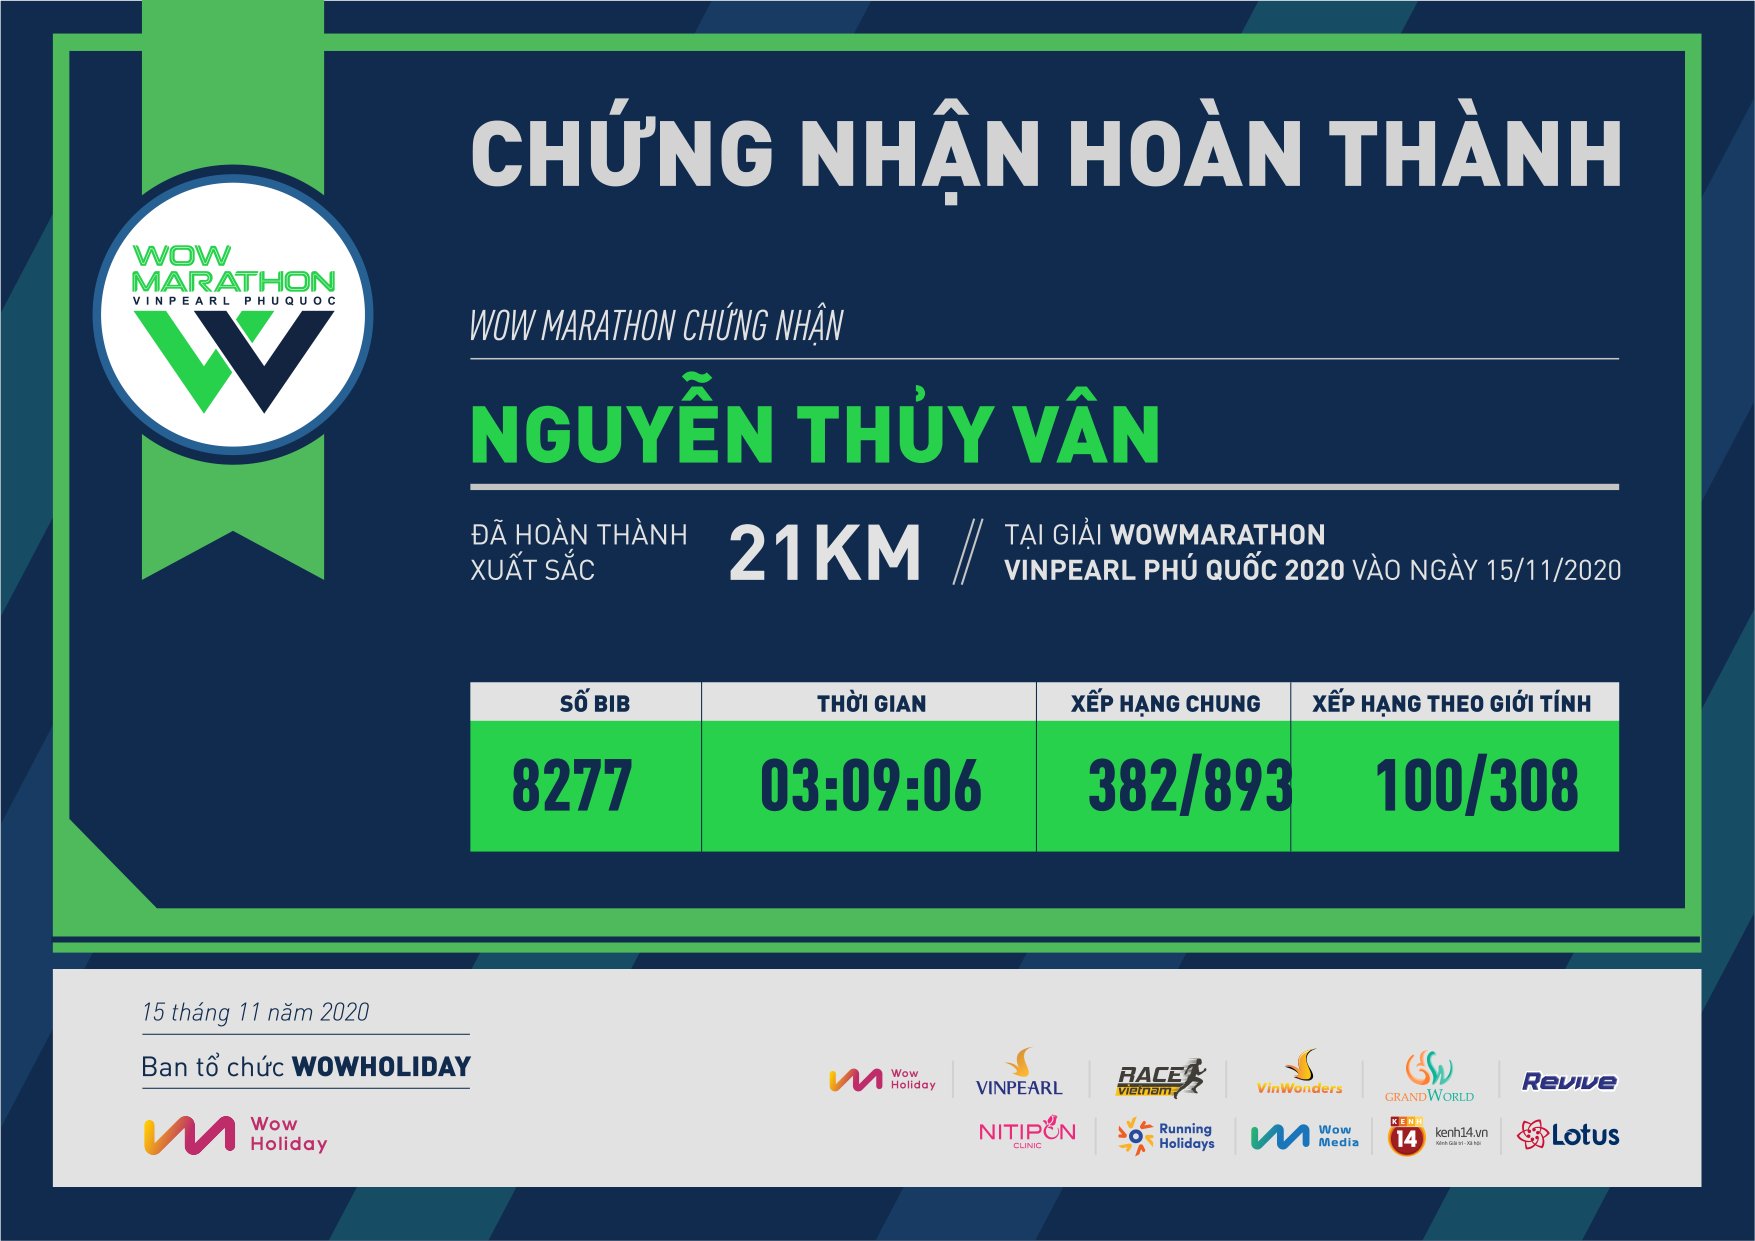 8277 - Nguyễn Thủy Vân